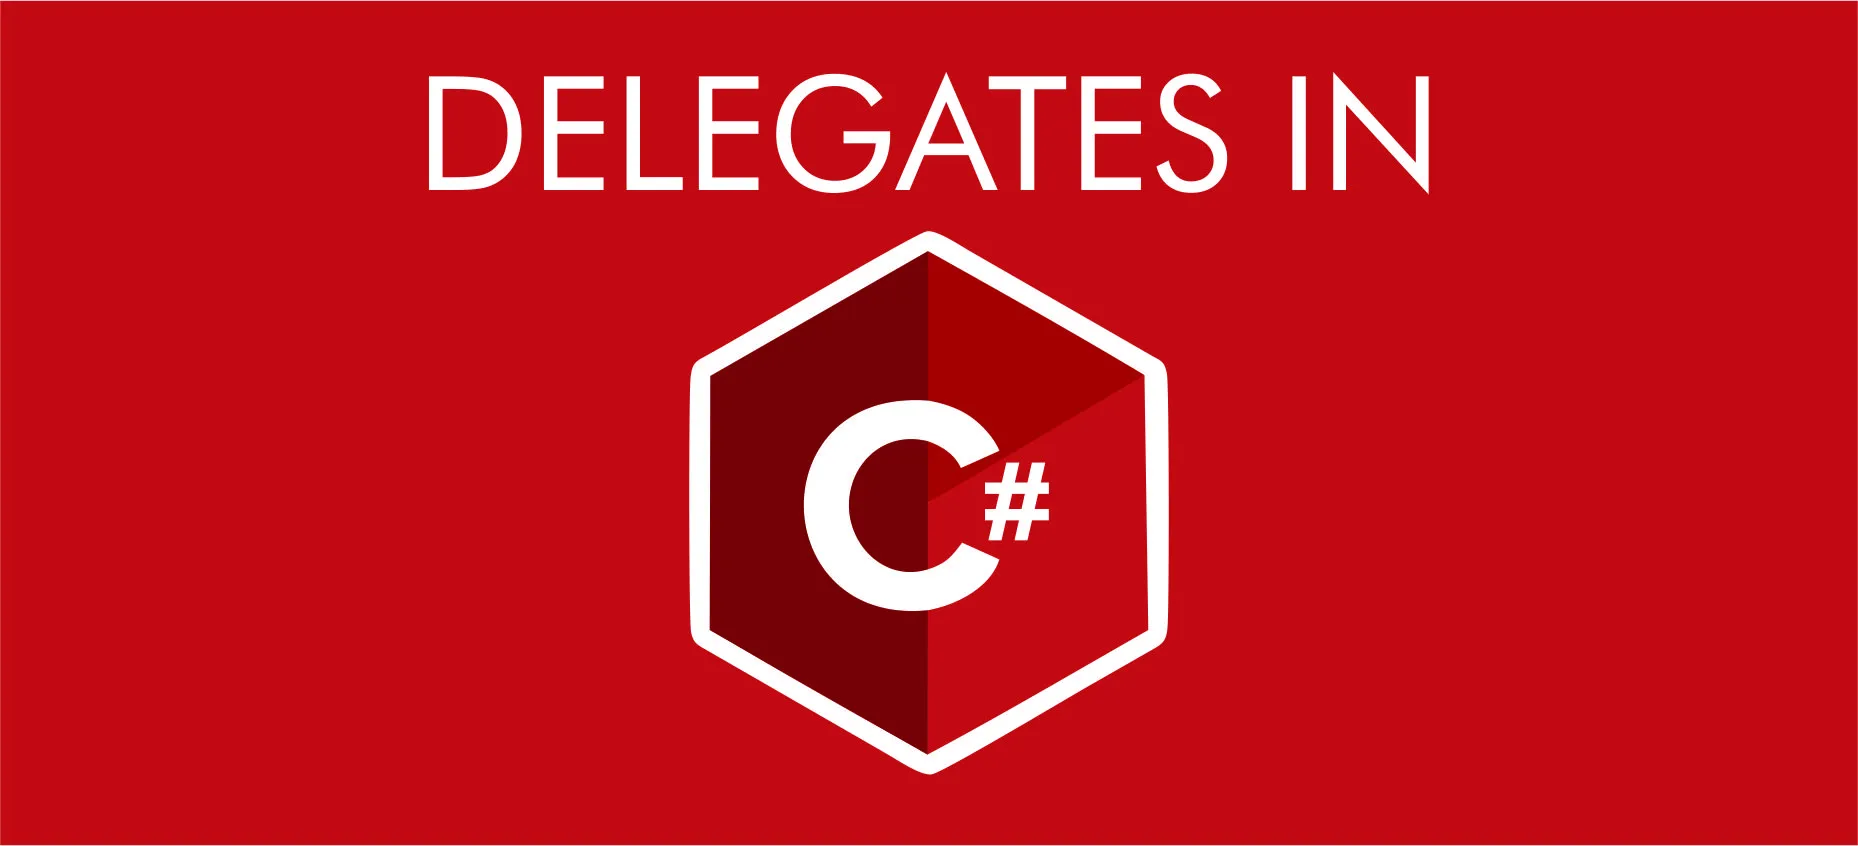 Delegates in C#